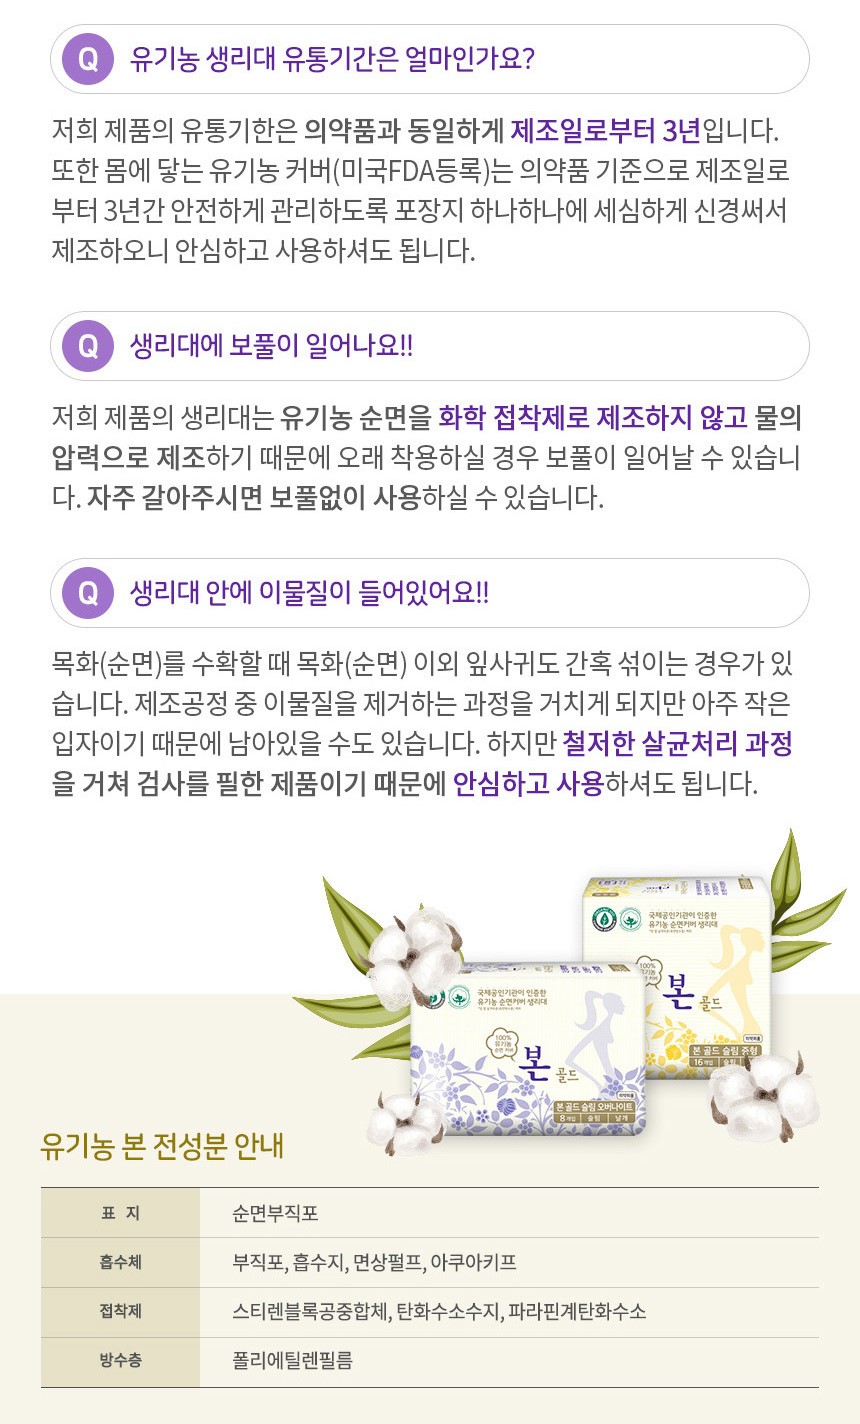 韓國食品-[Organic Bon] Gold Organic Cotton Sanitary Napkin [Large 280mm] (14pcs)